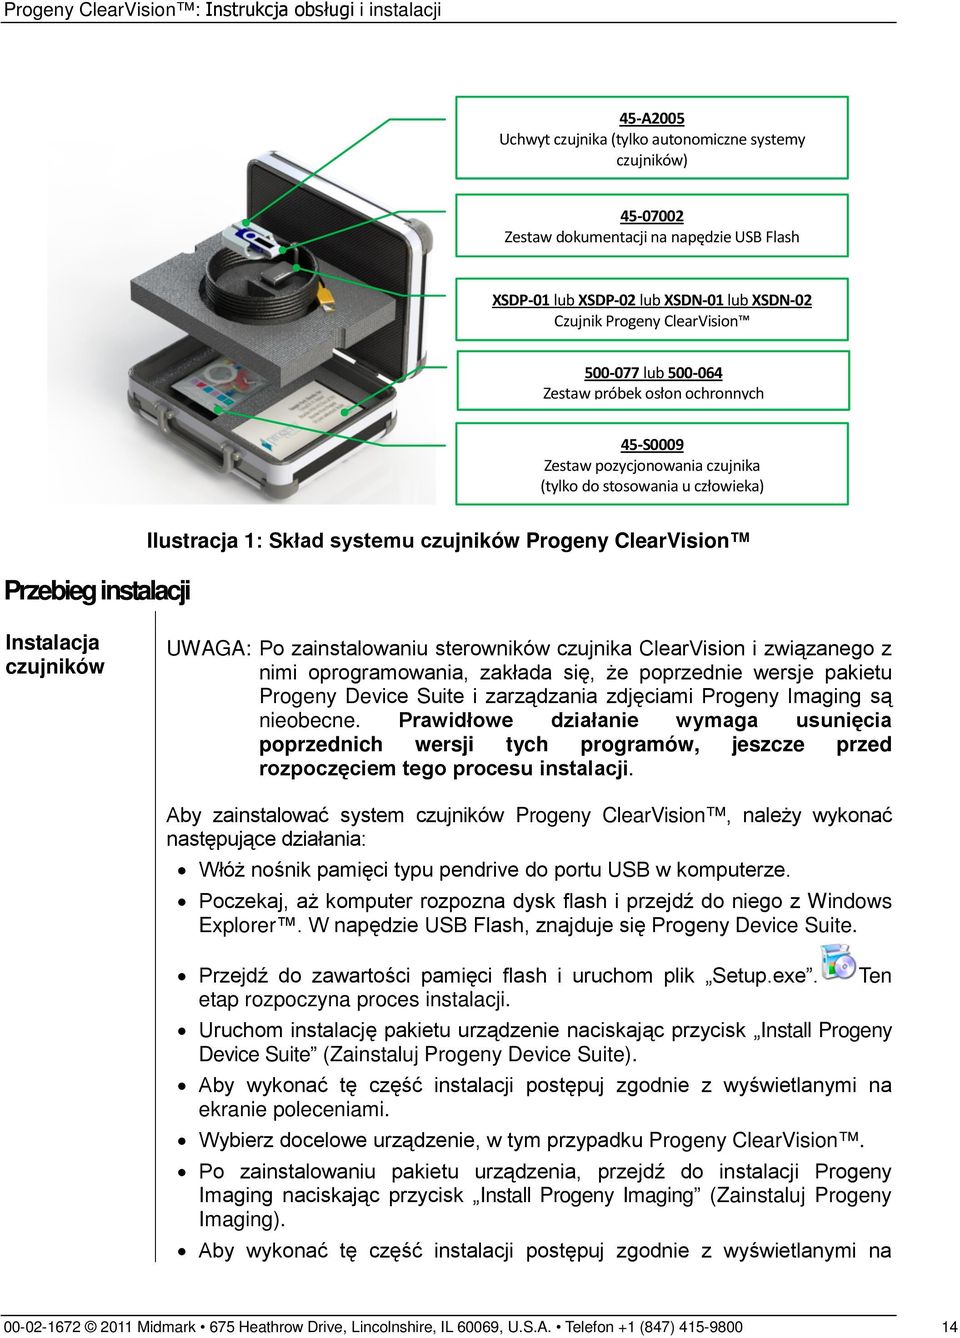 Instalacja czujników UWAGA: Po zainstalowaniu sterowników czujnika ClearVision i związanego z nimi oprogramowania, zakłada się, że poprzednie wersje pakietu Progeny Device Suite i zarządzania